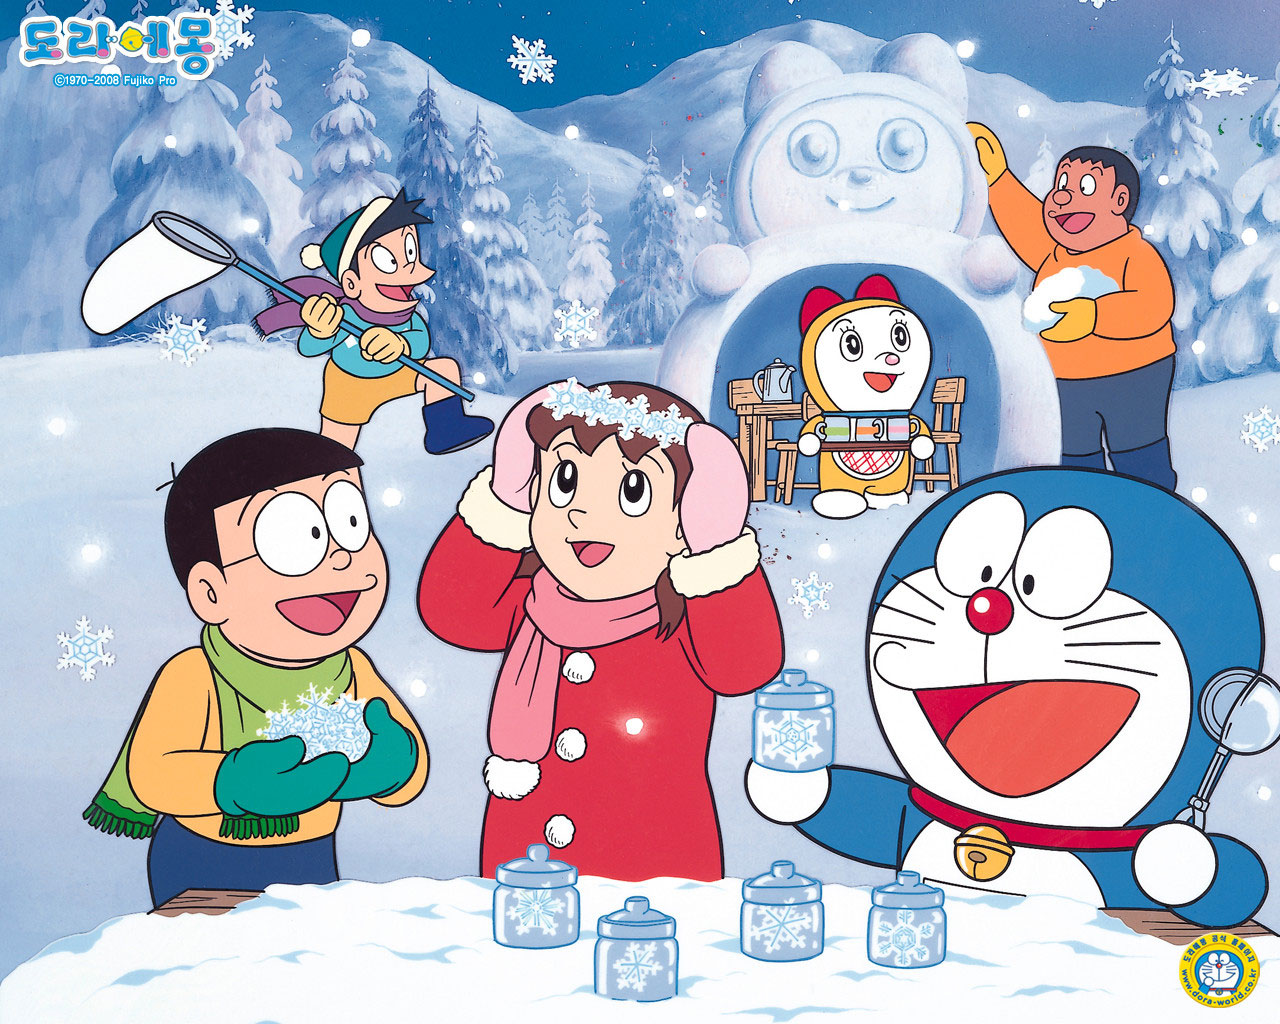 Hình ảnh Doremon cute ngầu đáng yêu nhất quả đất | Cute cartoon wallpapers,  Doremon cartoon, Doraemon wallpapers